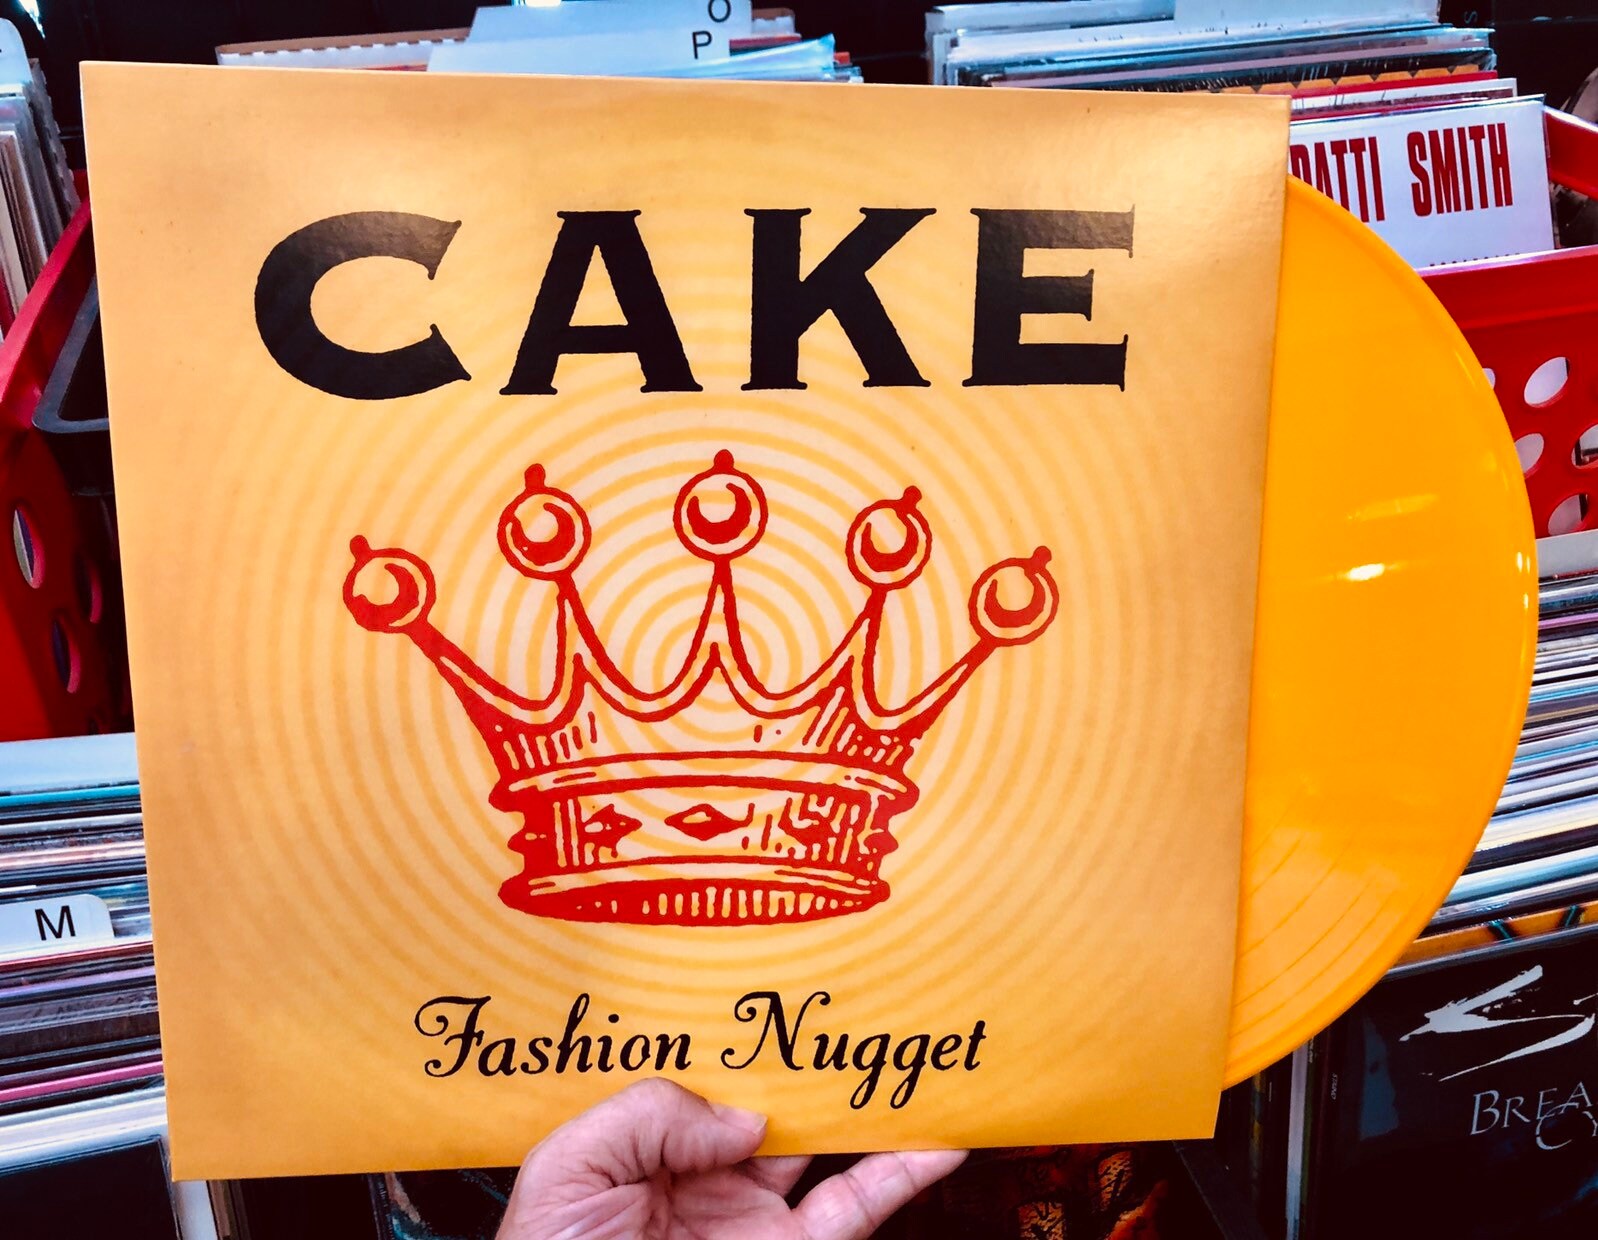 CAKE ‘fashion nugget’ colored vinyl LP record album